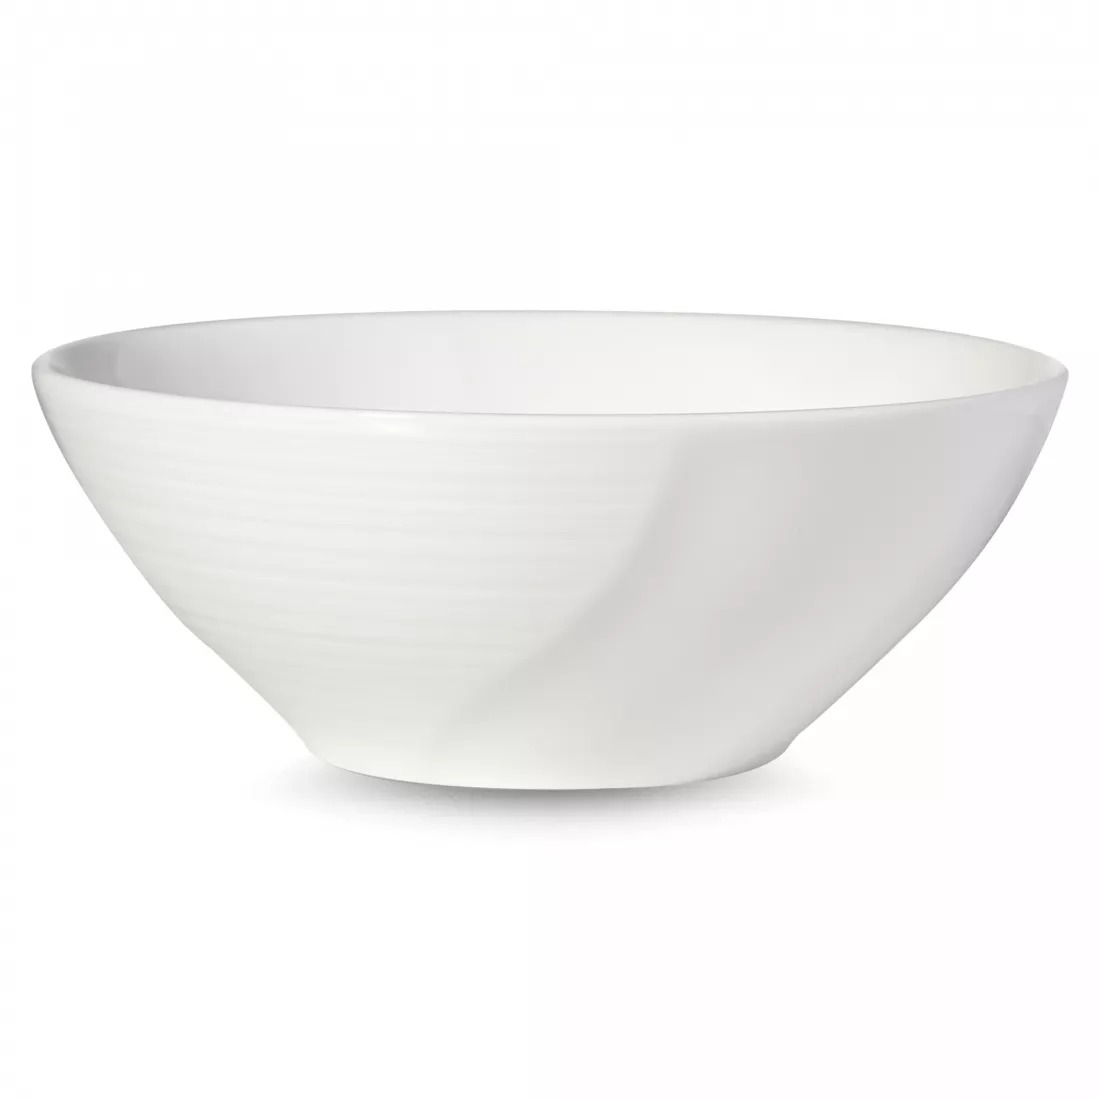 Салатник порционный Narumi Воздушный белый 14 см тарелка суповая narumi воздушный белый 23 см